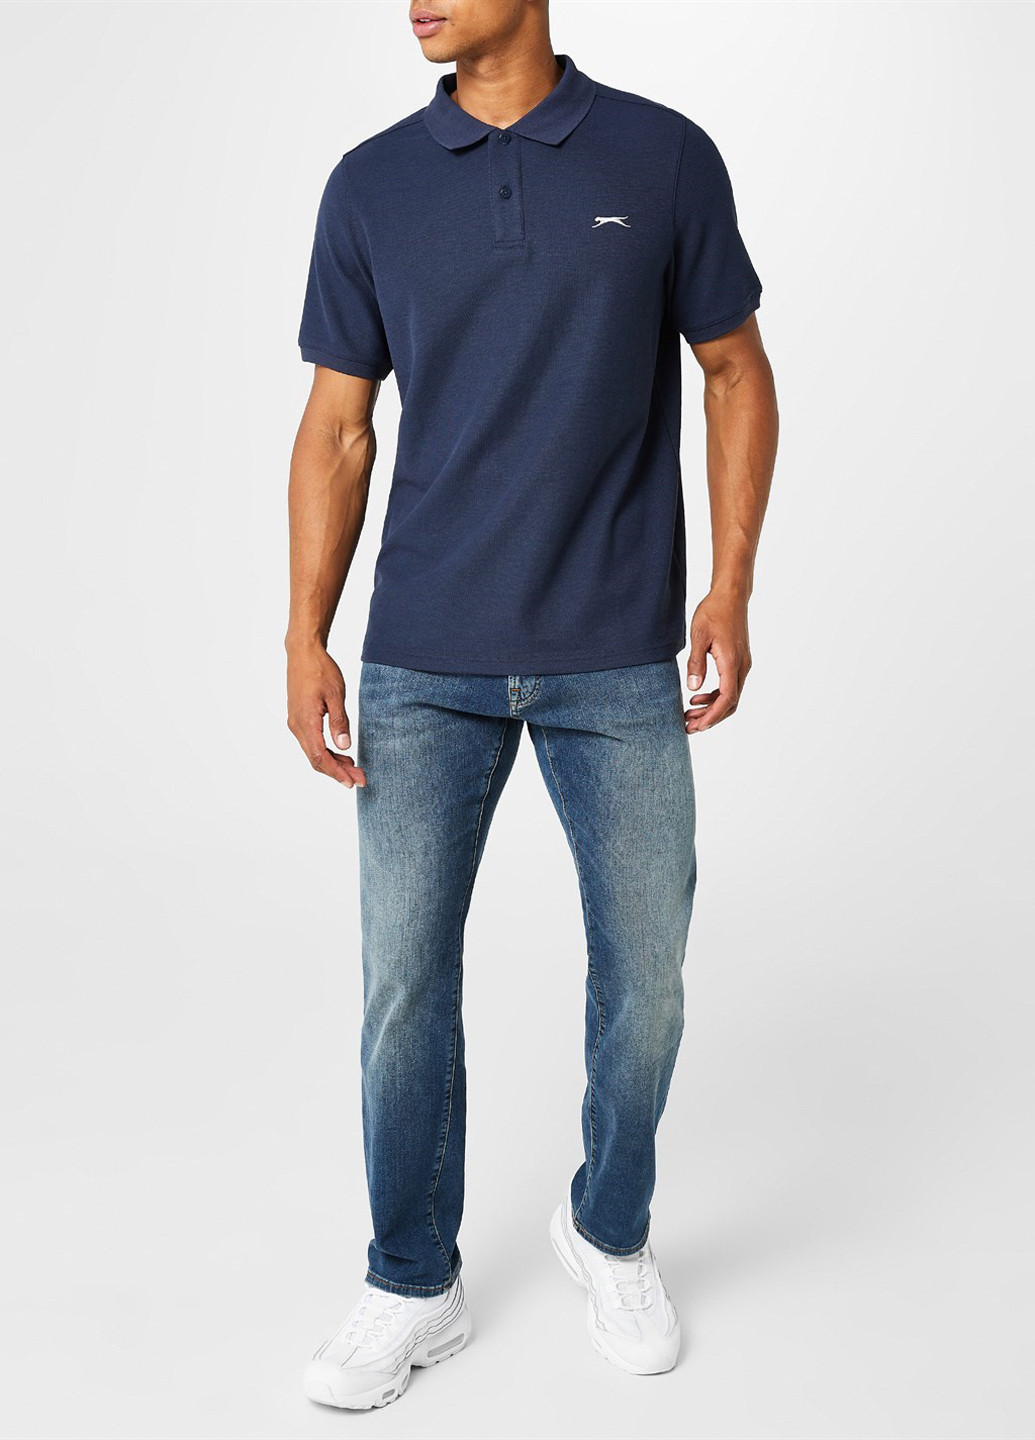 Темно-синяя футболка-поло для мужчин Slazenger меланжевая